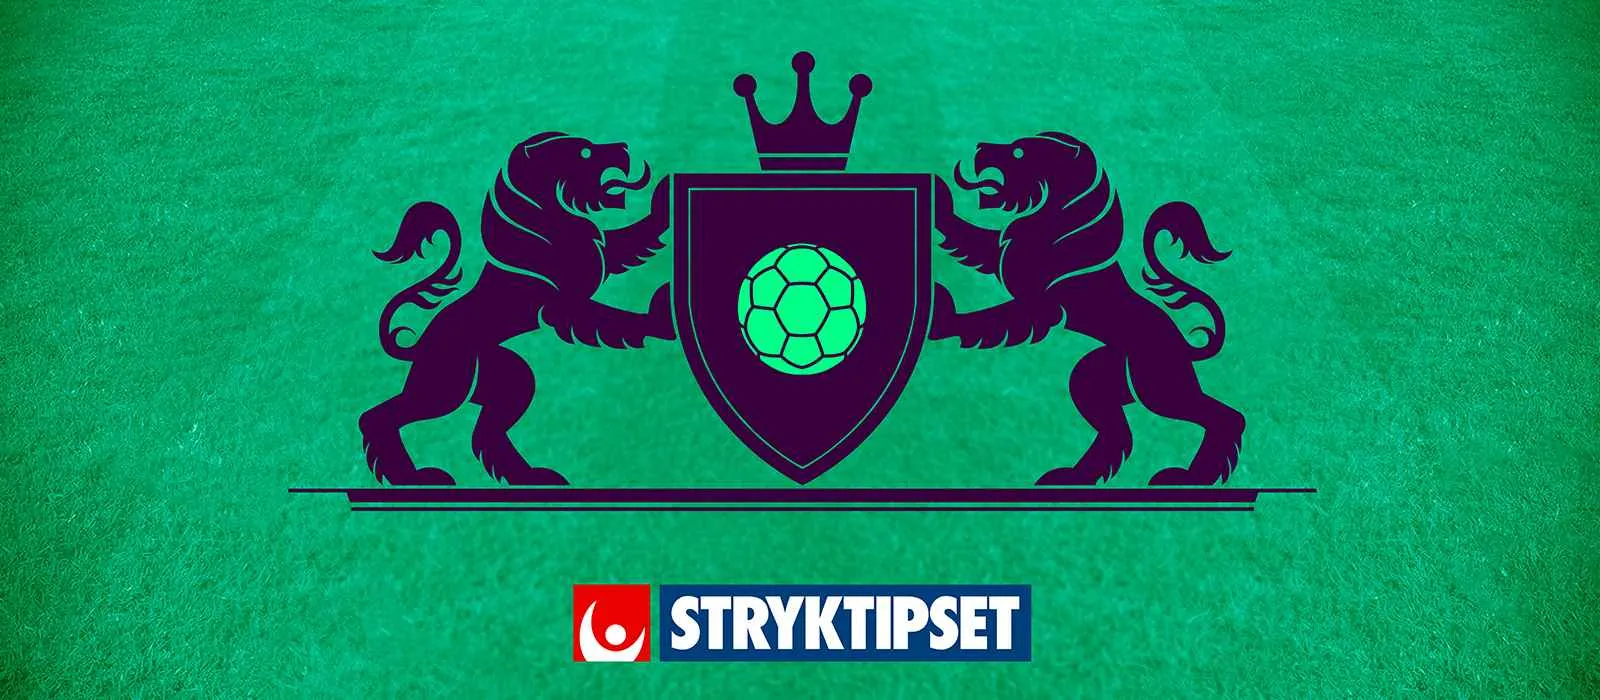 Stryktipsets logga i en bild som representerar fotbollsligan Premier League